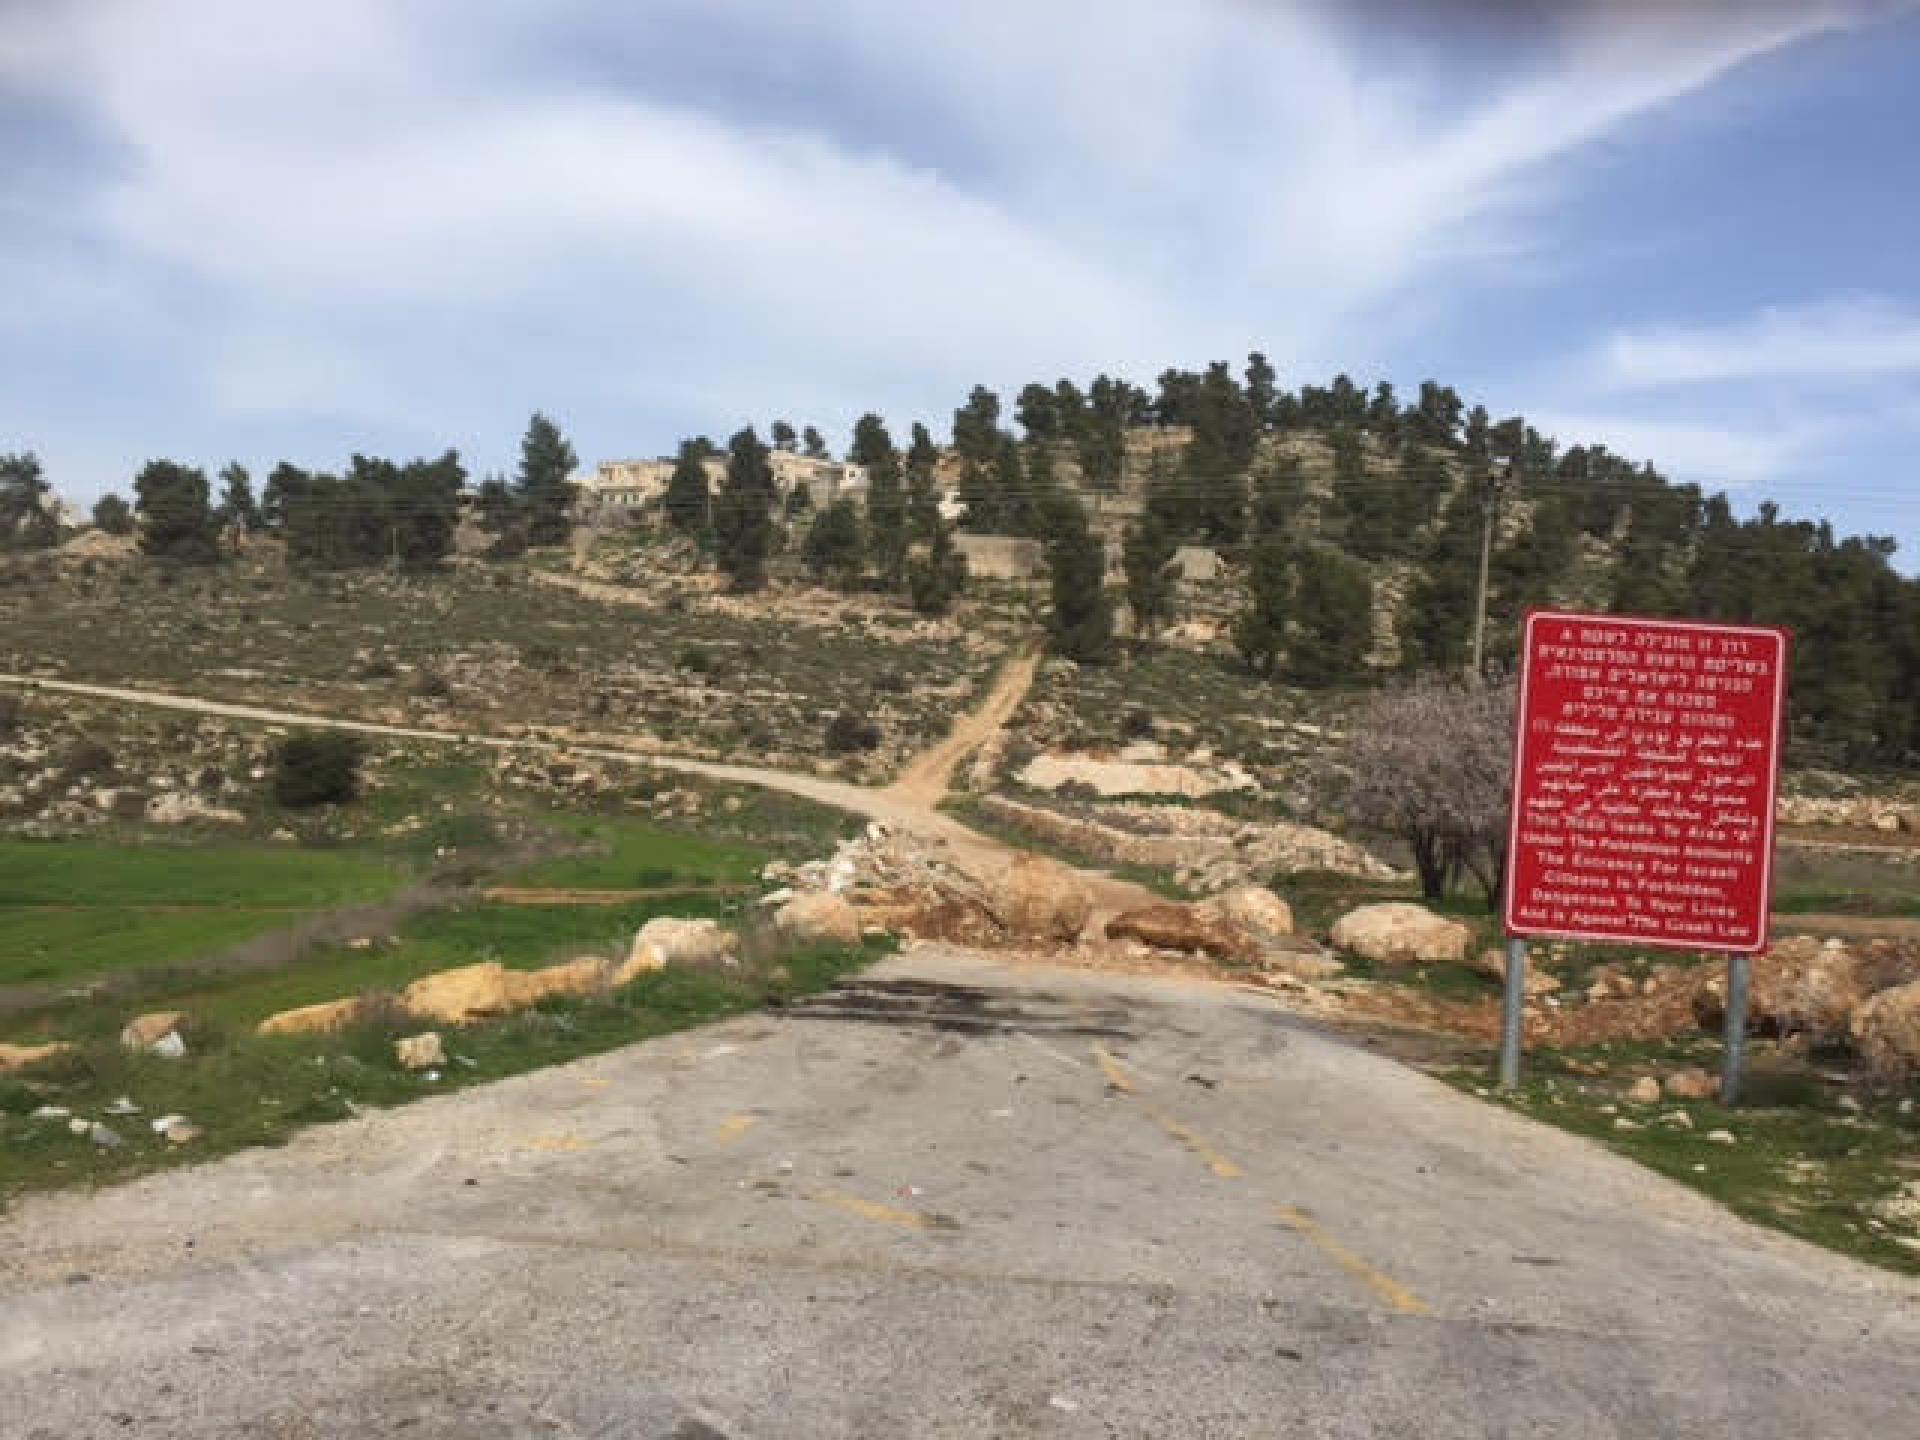 סוללה קטנה חוסמת כניסה ליישוב פלסטיני ולצידה שלט אדום המזהיר שזהו שטח A